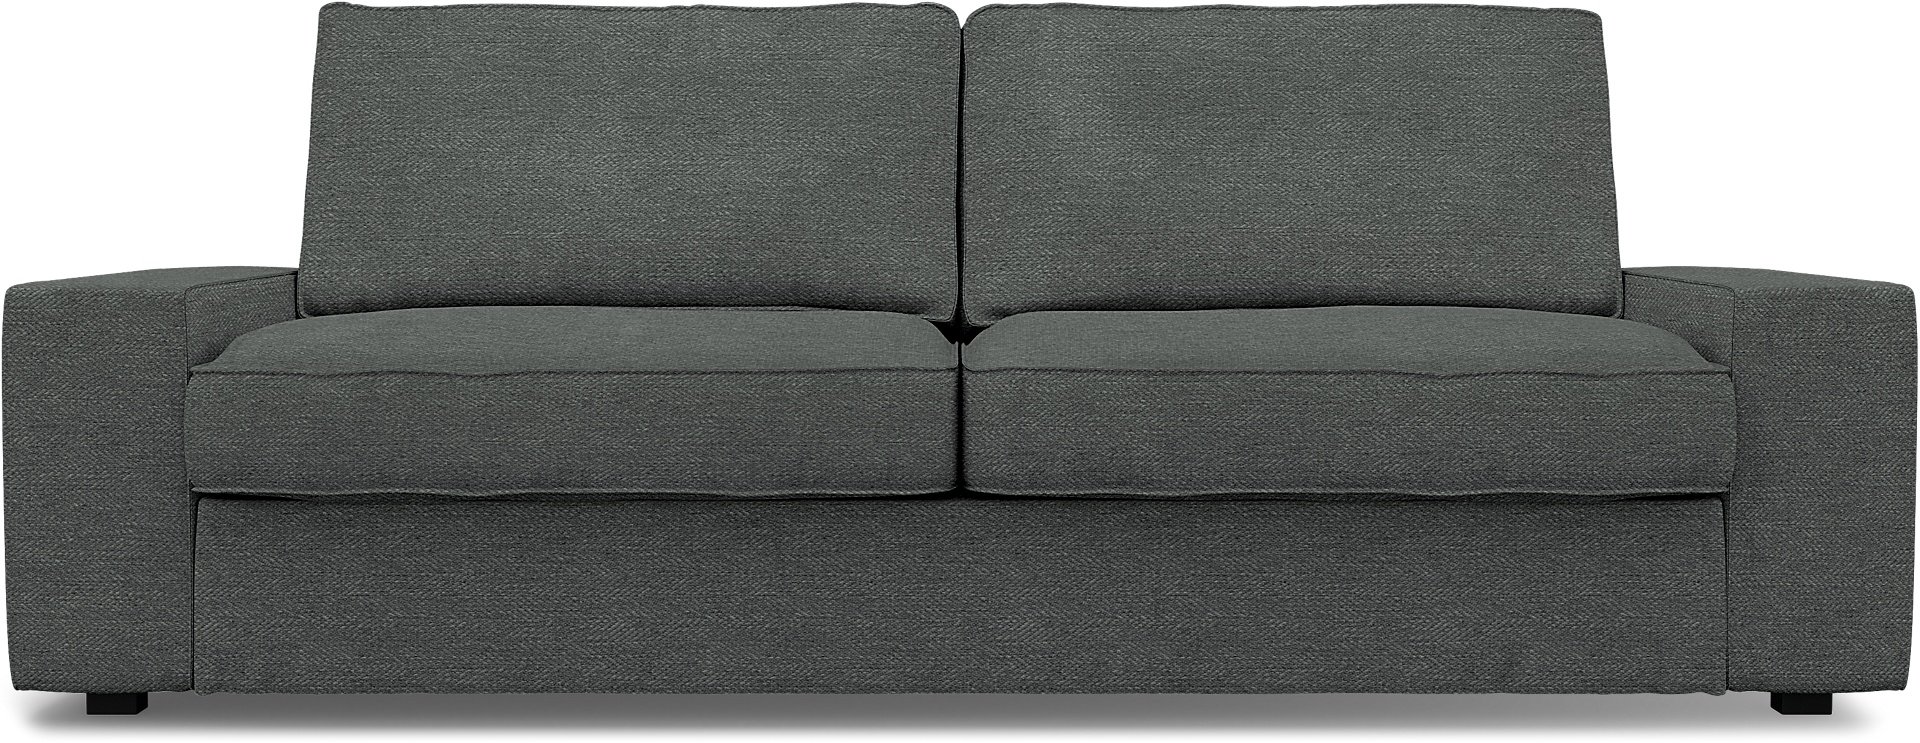 IKEA - Kivik 3 Seater Sofa Cover, Laurel, Boucle & Texture - Bemz